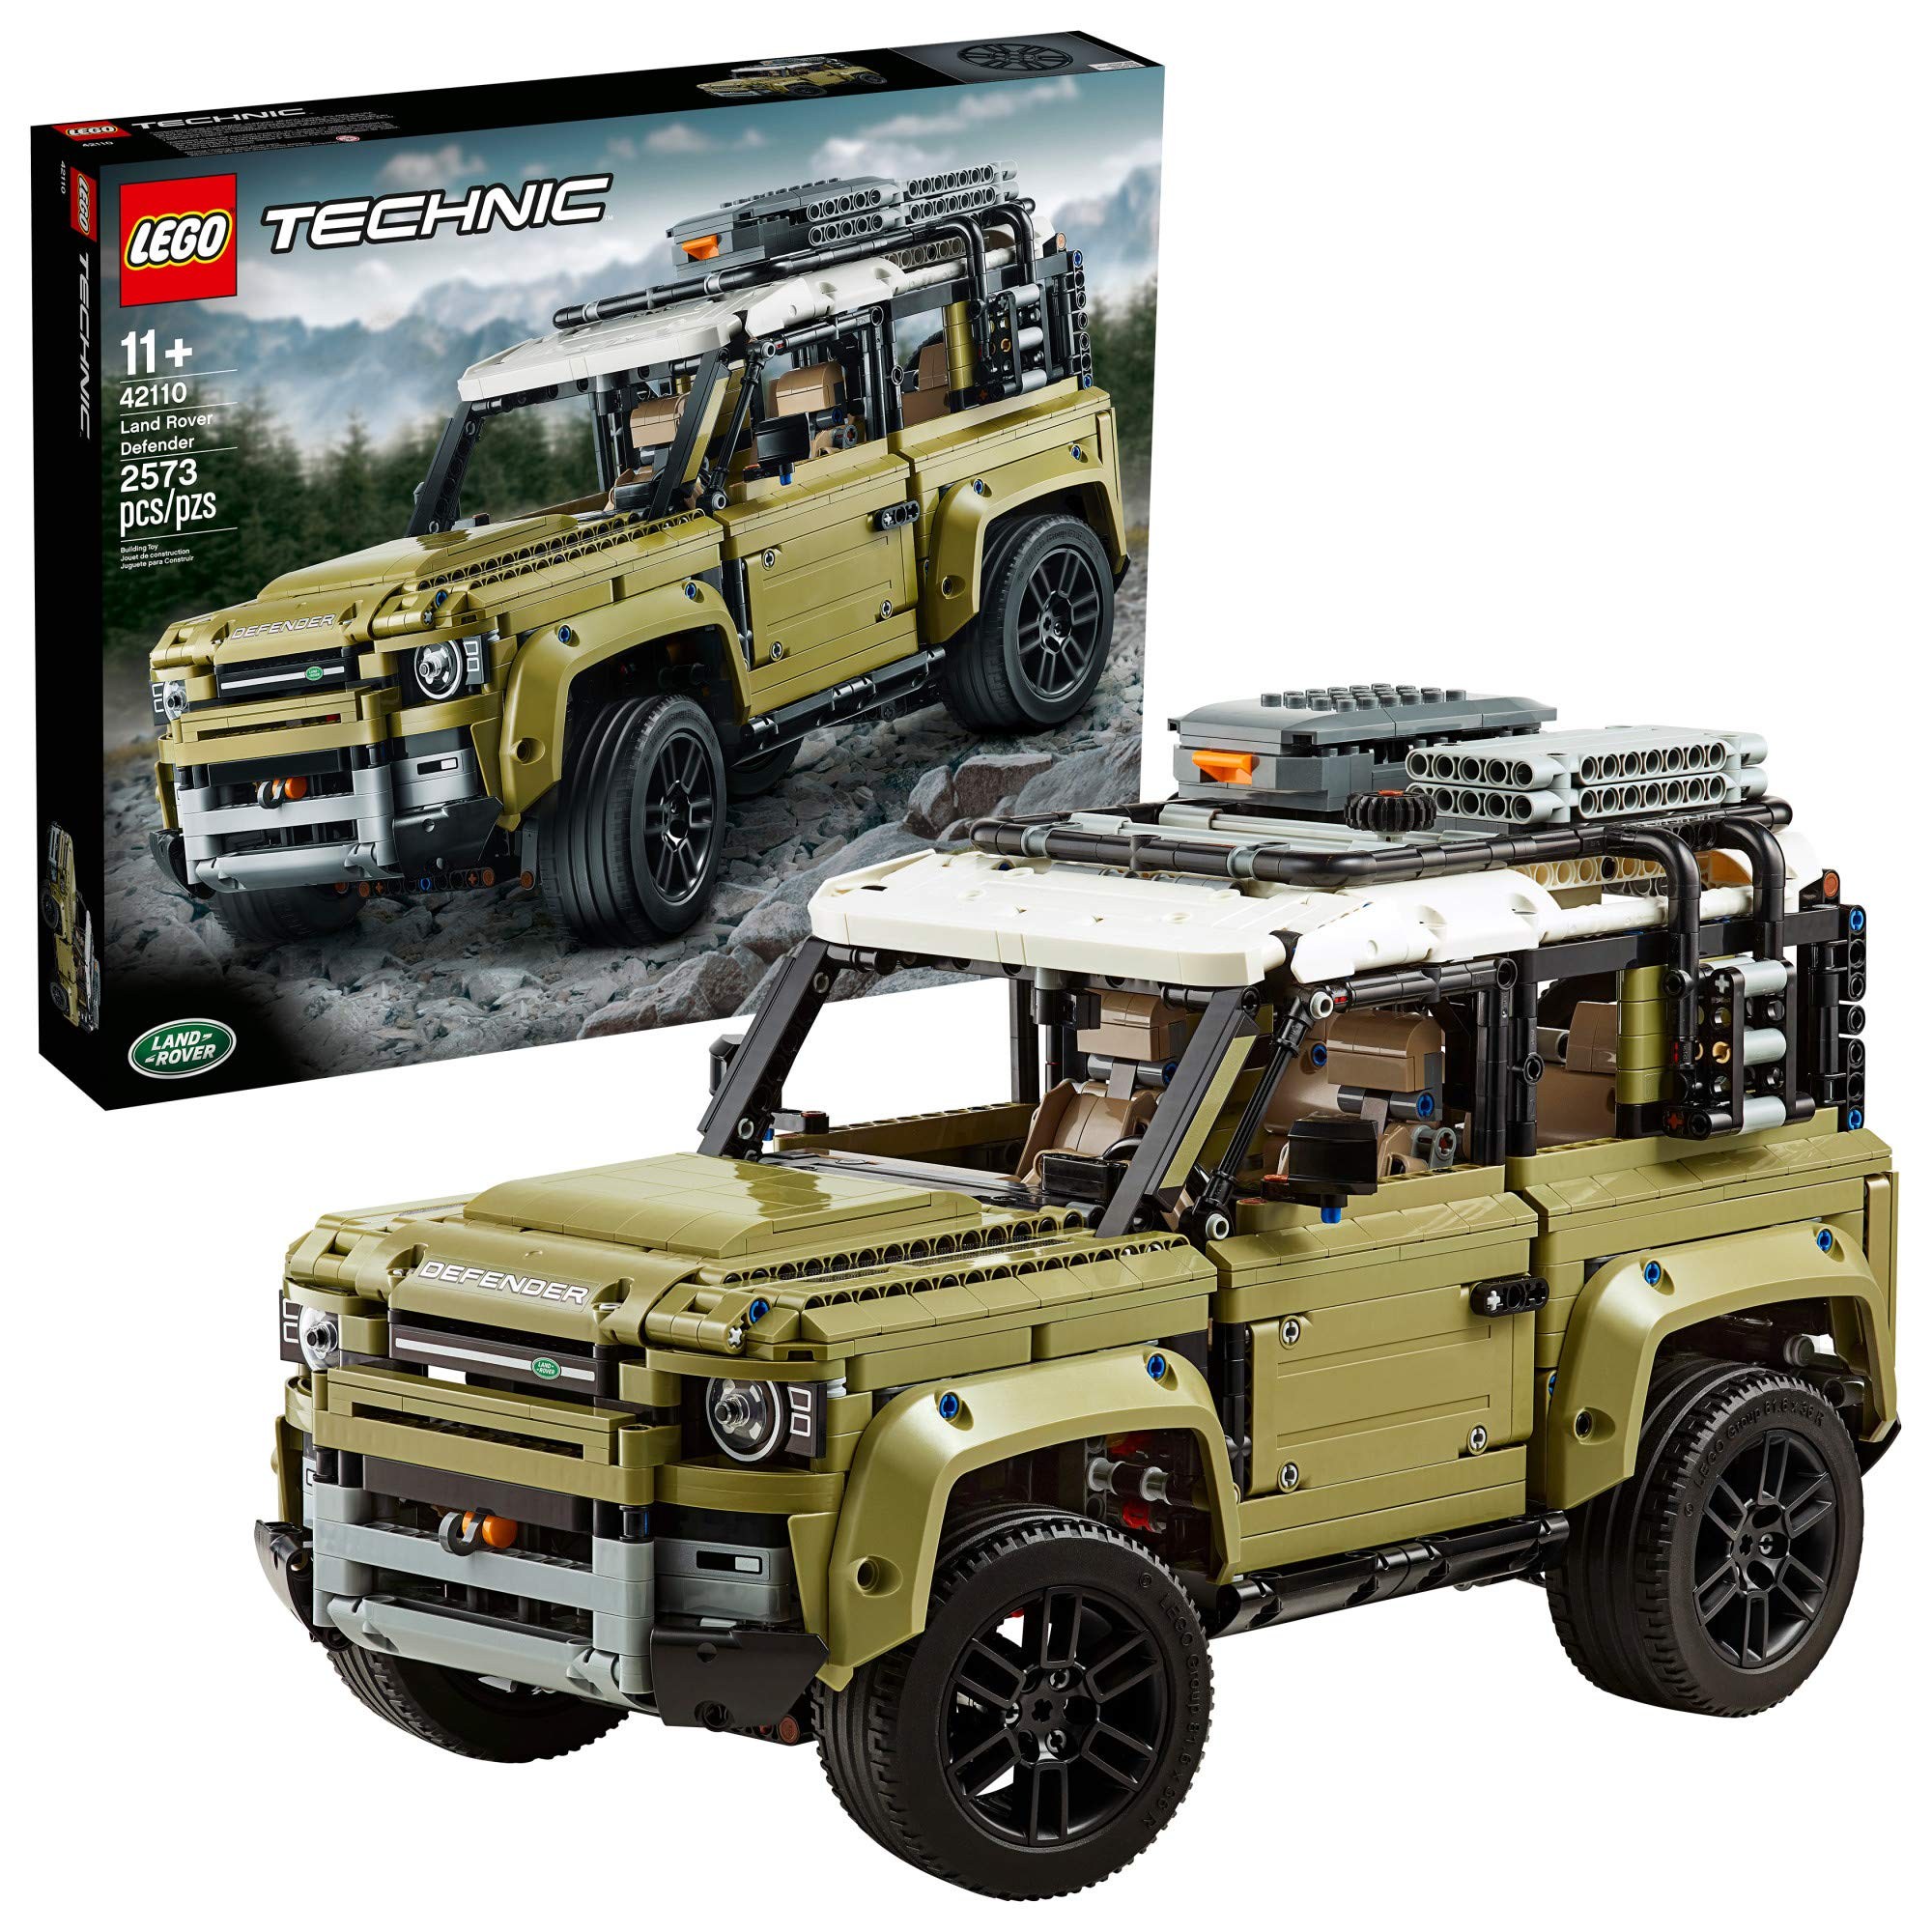 레고 테크닉 Land Rover Defender 42110 Building Kit New 2019 (2 573 Pieces), 본품선택 